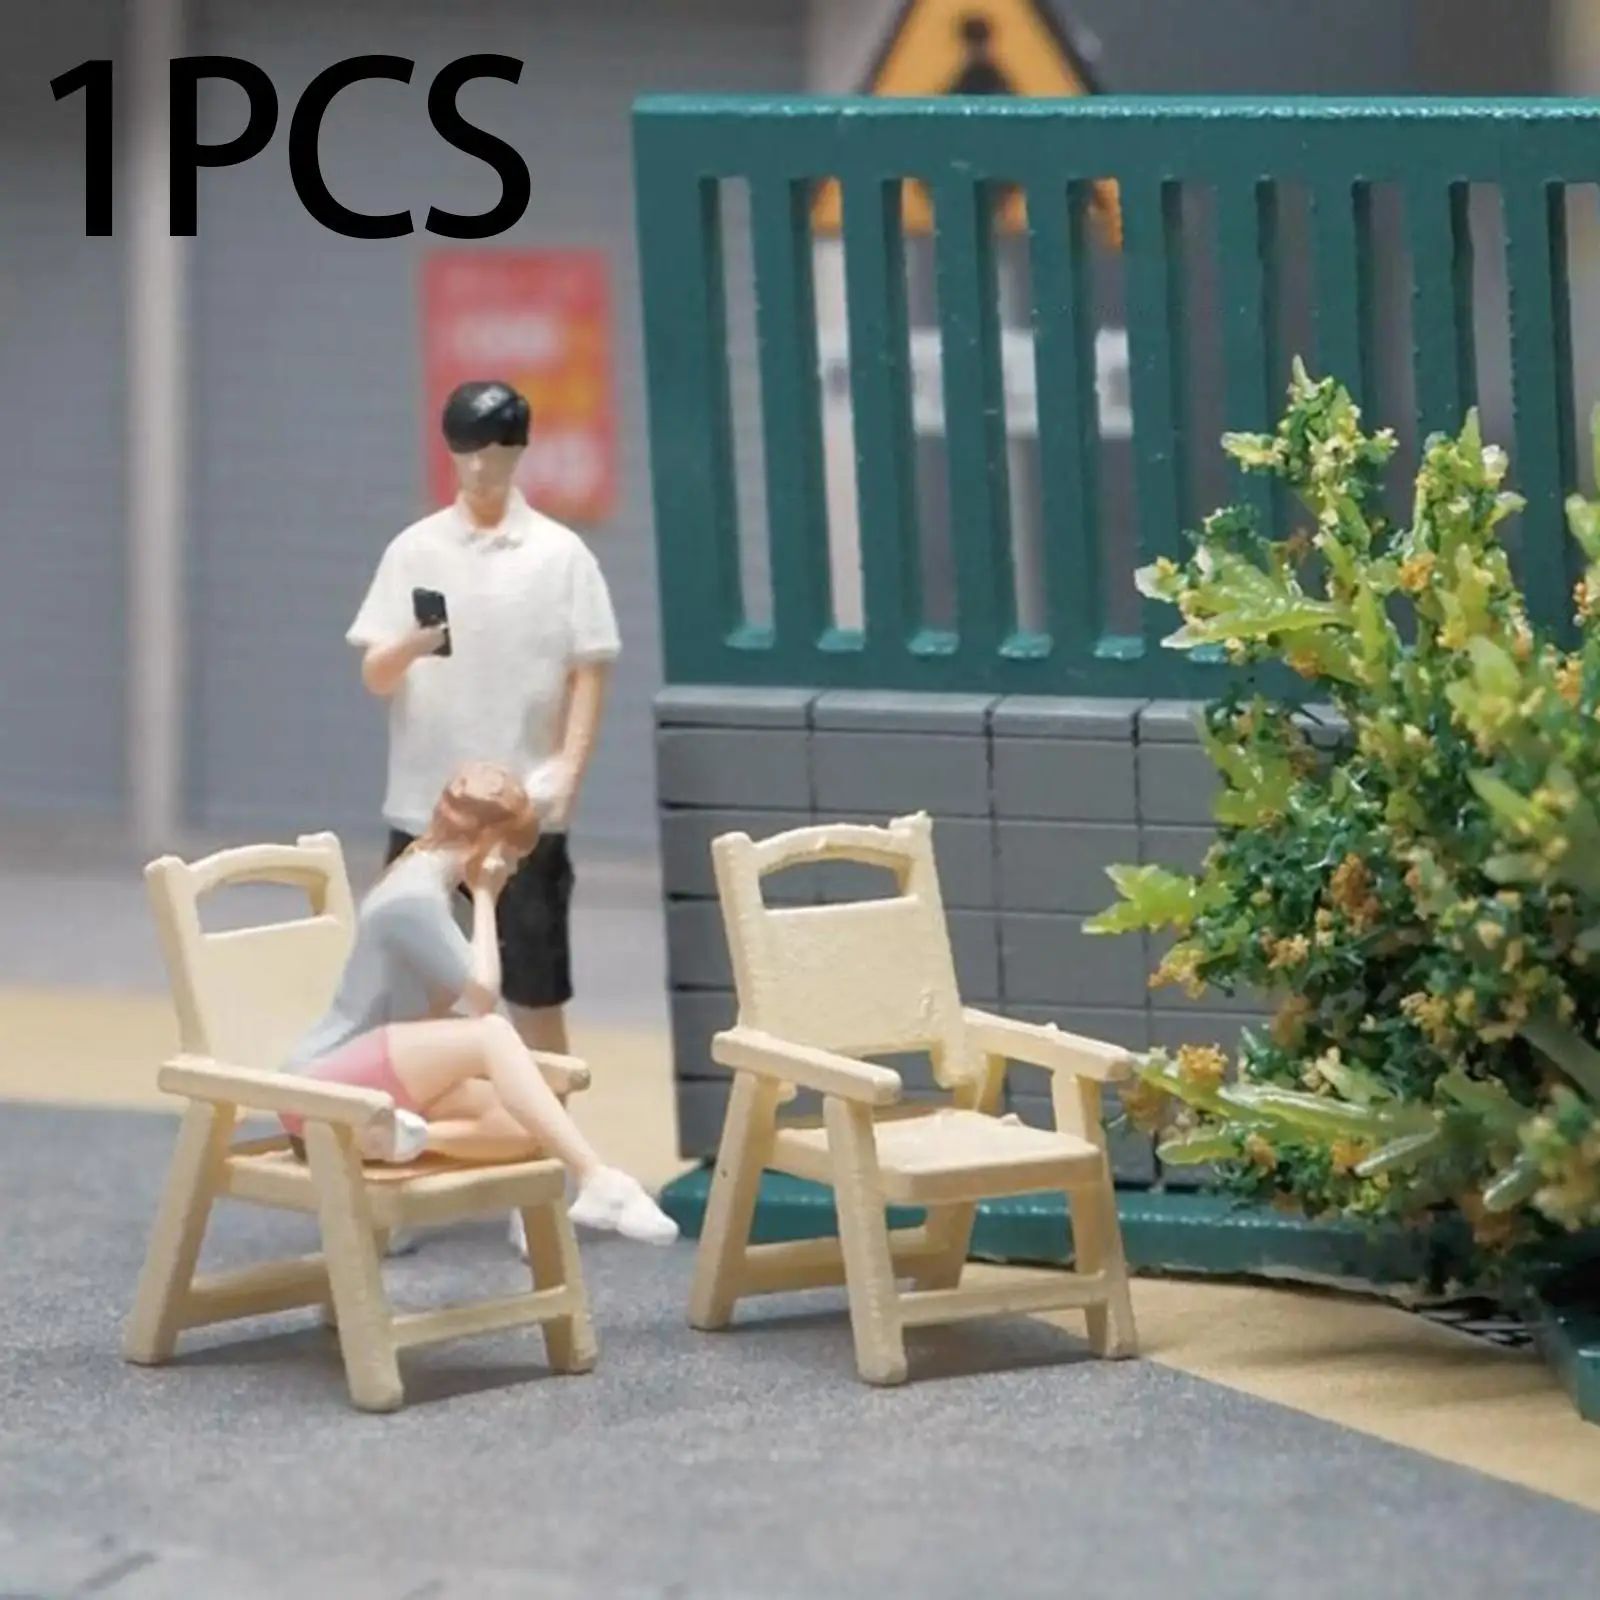 Miniature figure/64 Scale Resin Miniature Scenes for Dioramas Street Scene